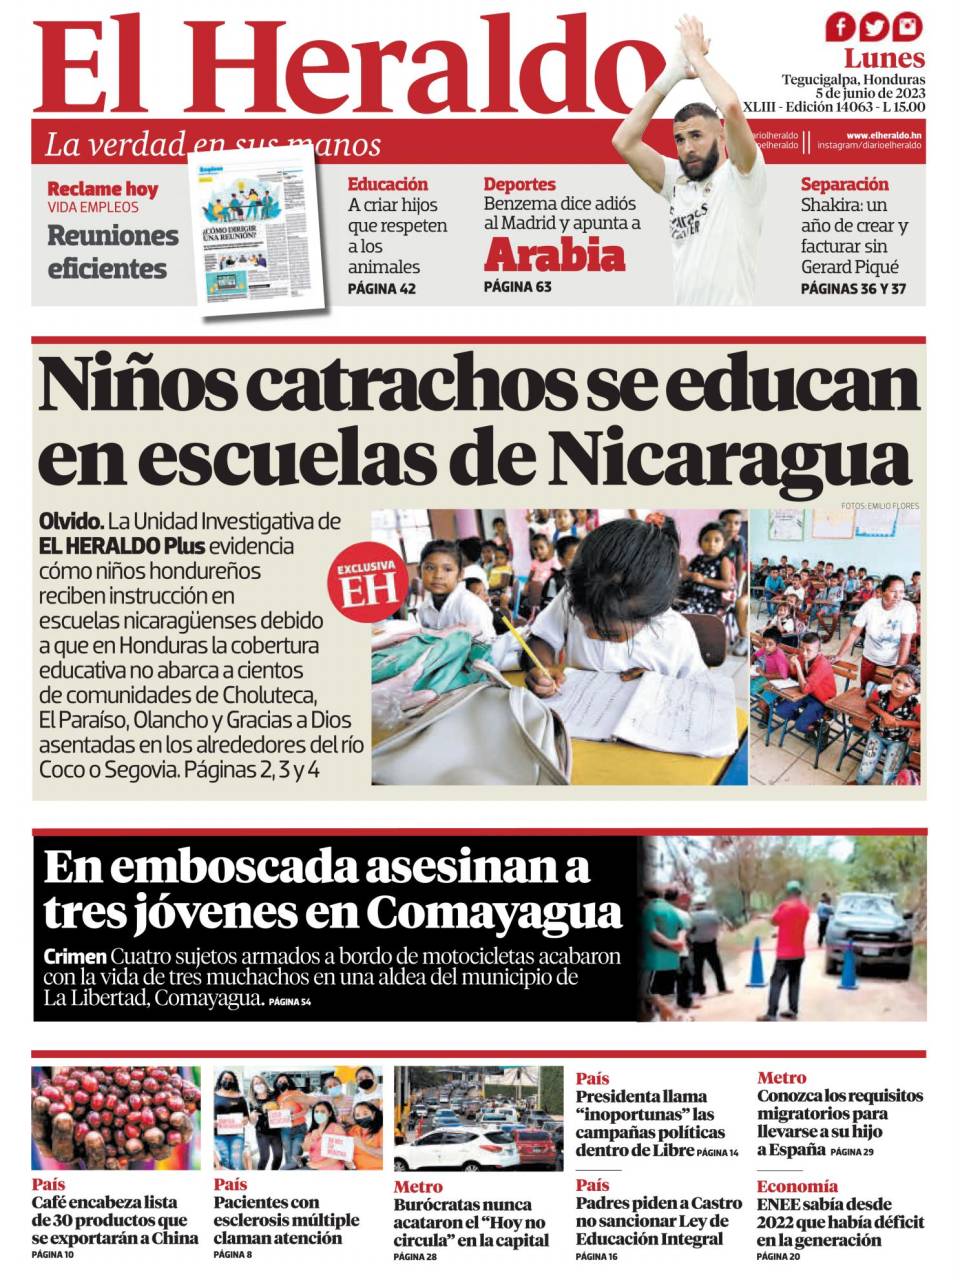 Niños catrachos se educan en escuelas de Nicaragua